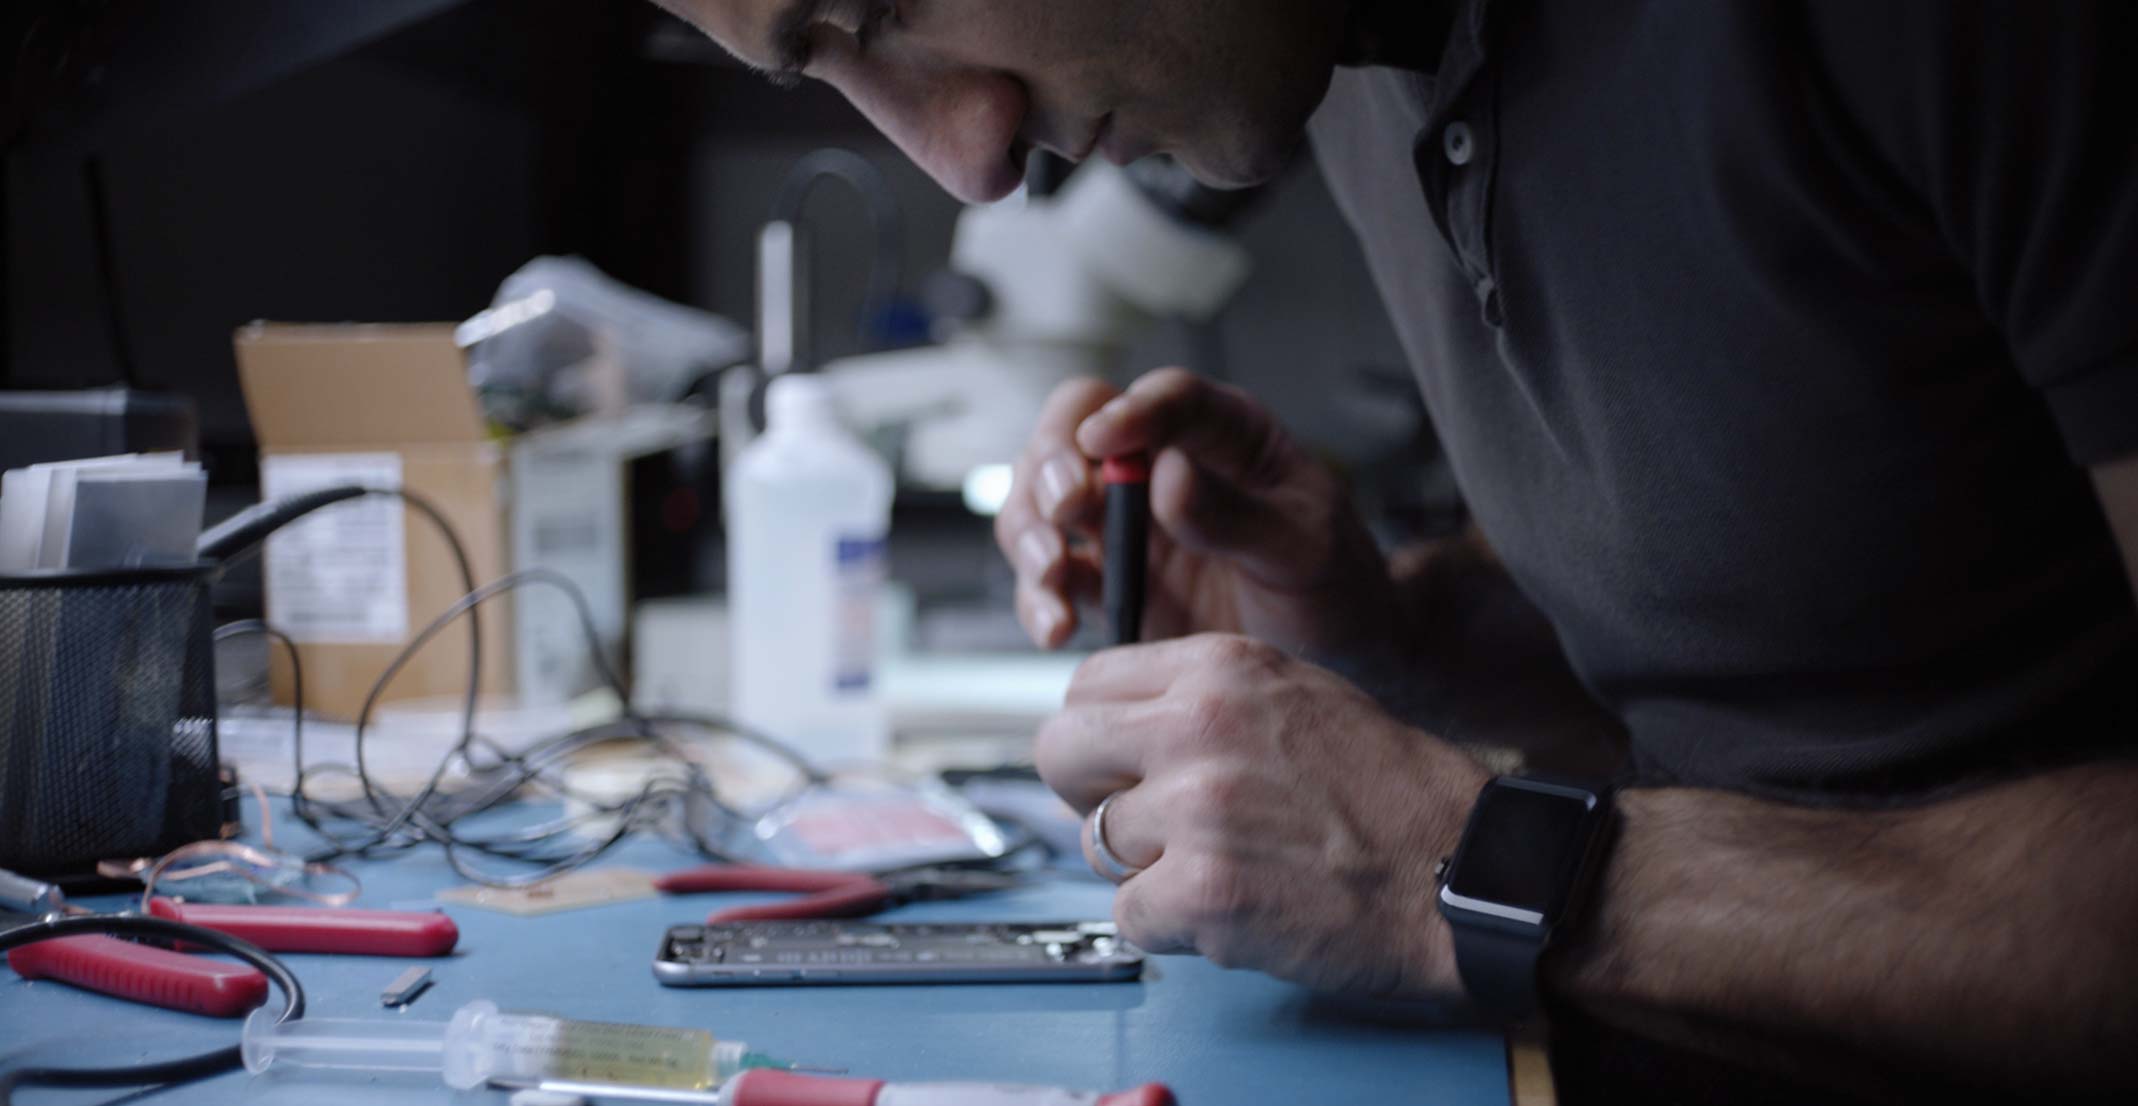 Ehsan ผู้จัดการฝ่ายวิศวกรรมสำหรับกลุ่มออกแบบผลิตภัณฑ์เซ็นเซอร์ของ Apple ทำงานกับ iPhone ในห้องปฏิบัติการวิศวกรรม